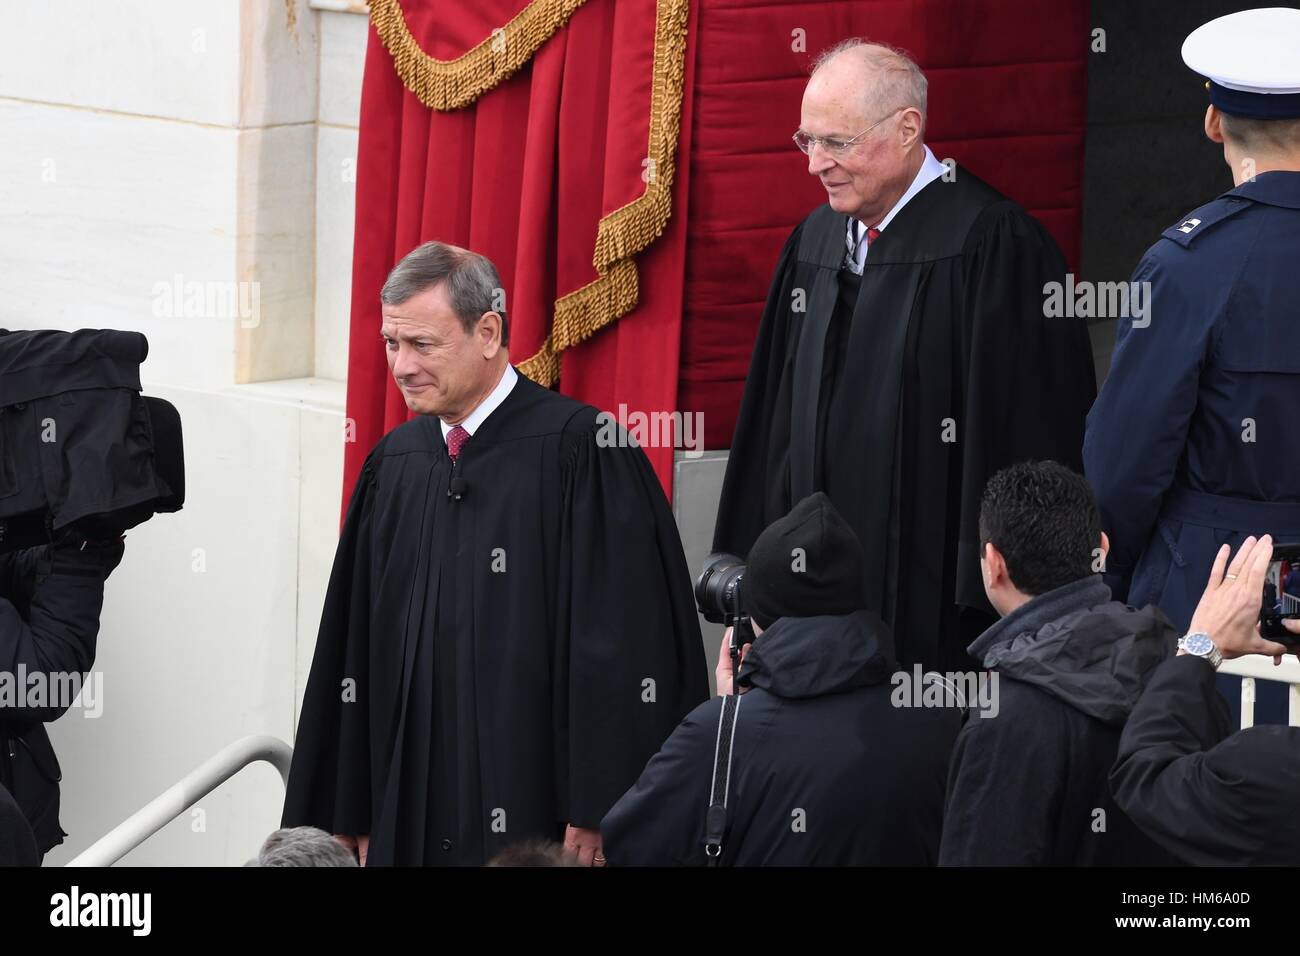 Supreme Court Chief Justice John Roberts geht mit Richter Anthony Kennedy während der Anreise für die 68. Präsident Eröffnungs-Zeremonie auf dem Capitol Hill 20. Januar 2017 in Washington, DC. Donald Trump wurde der 45. Präsident der Vereinigten Staaten in der Zeremonie. Stockfoto